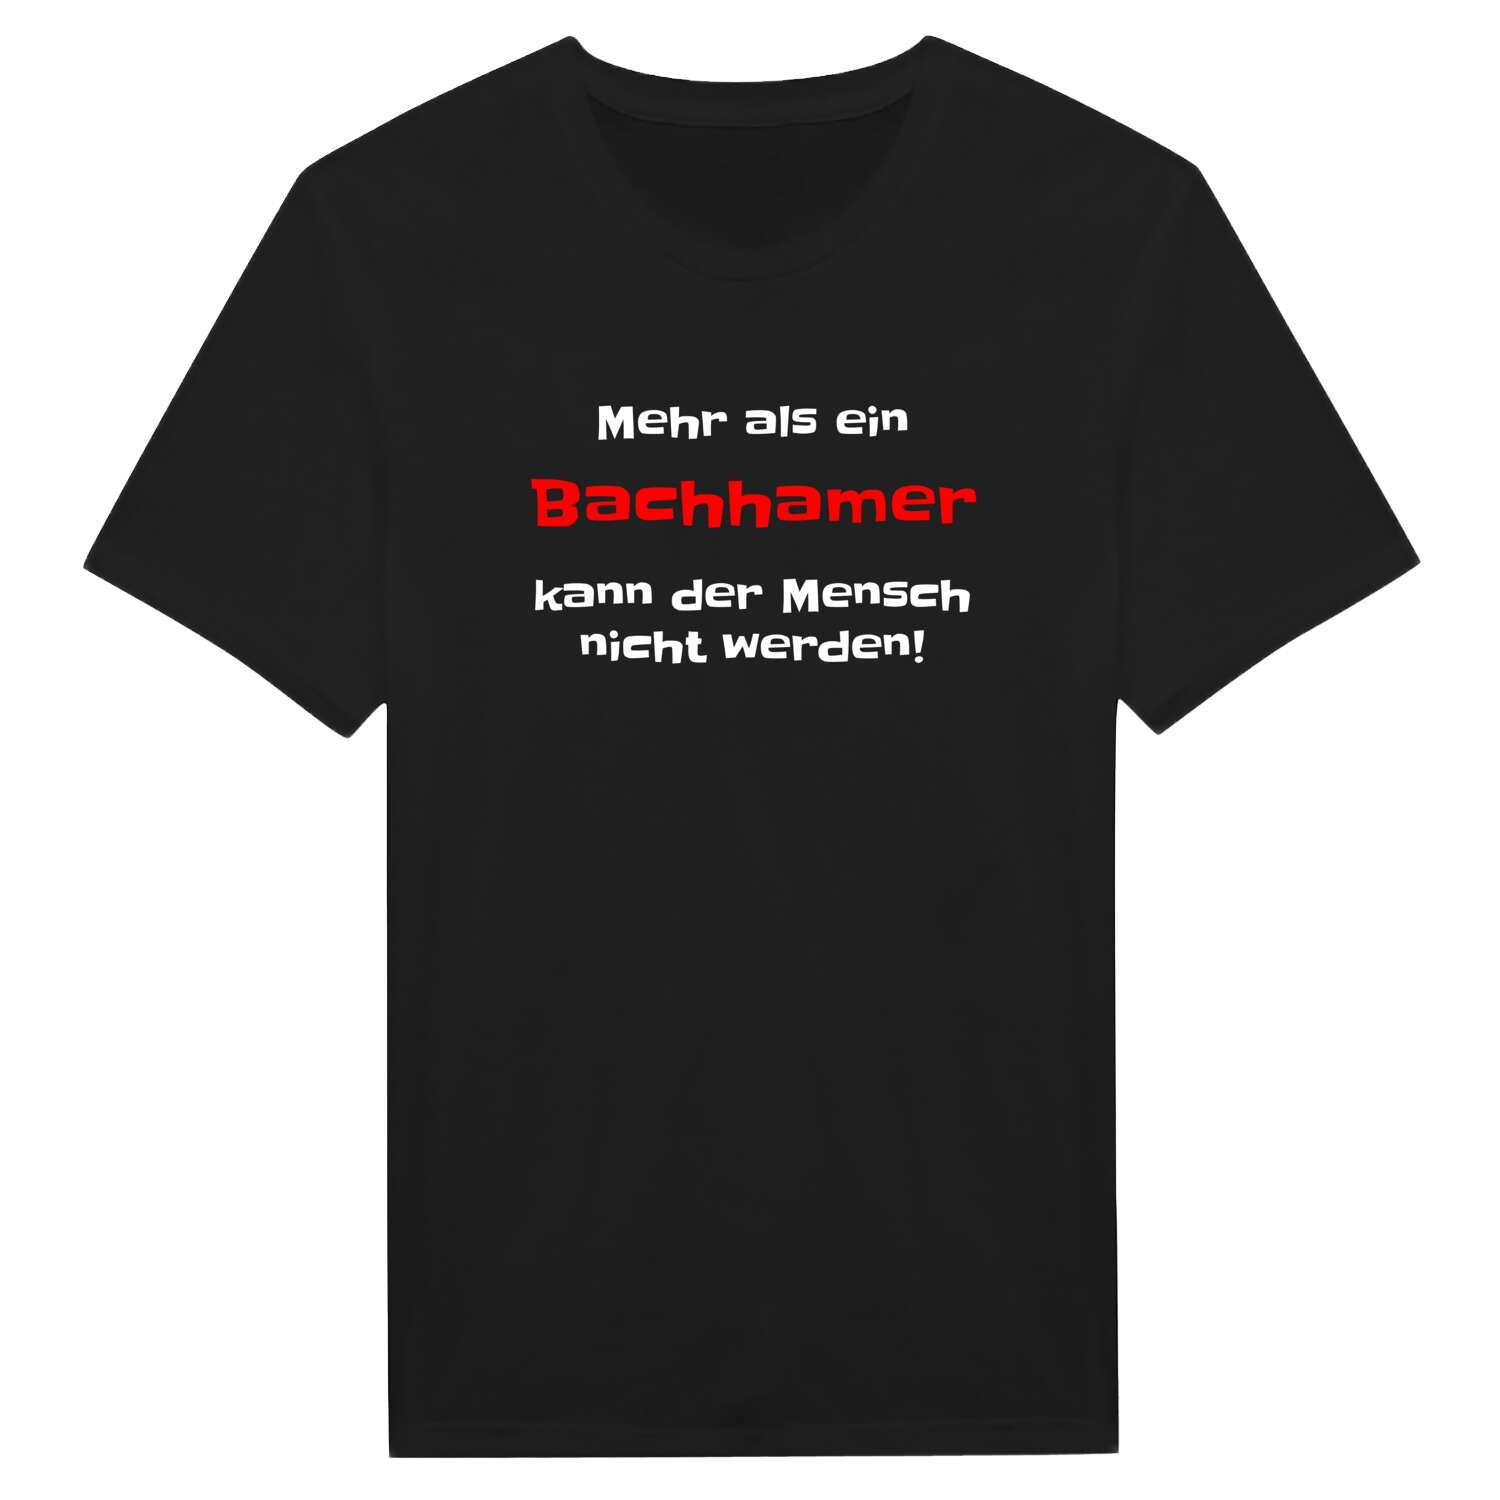 Bachham T-Shirt »Mehr als ein«